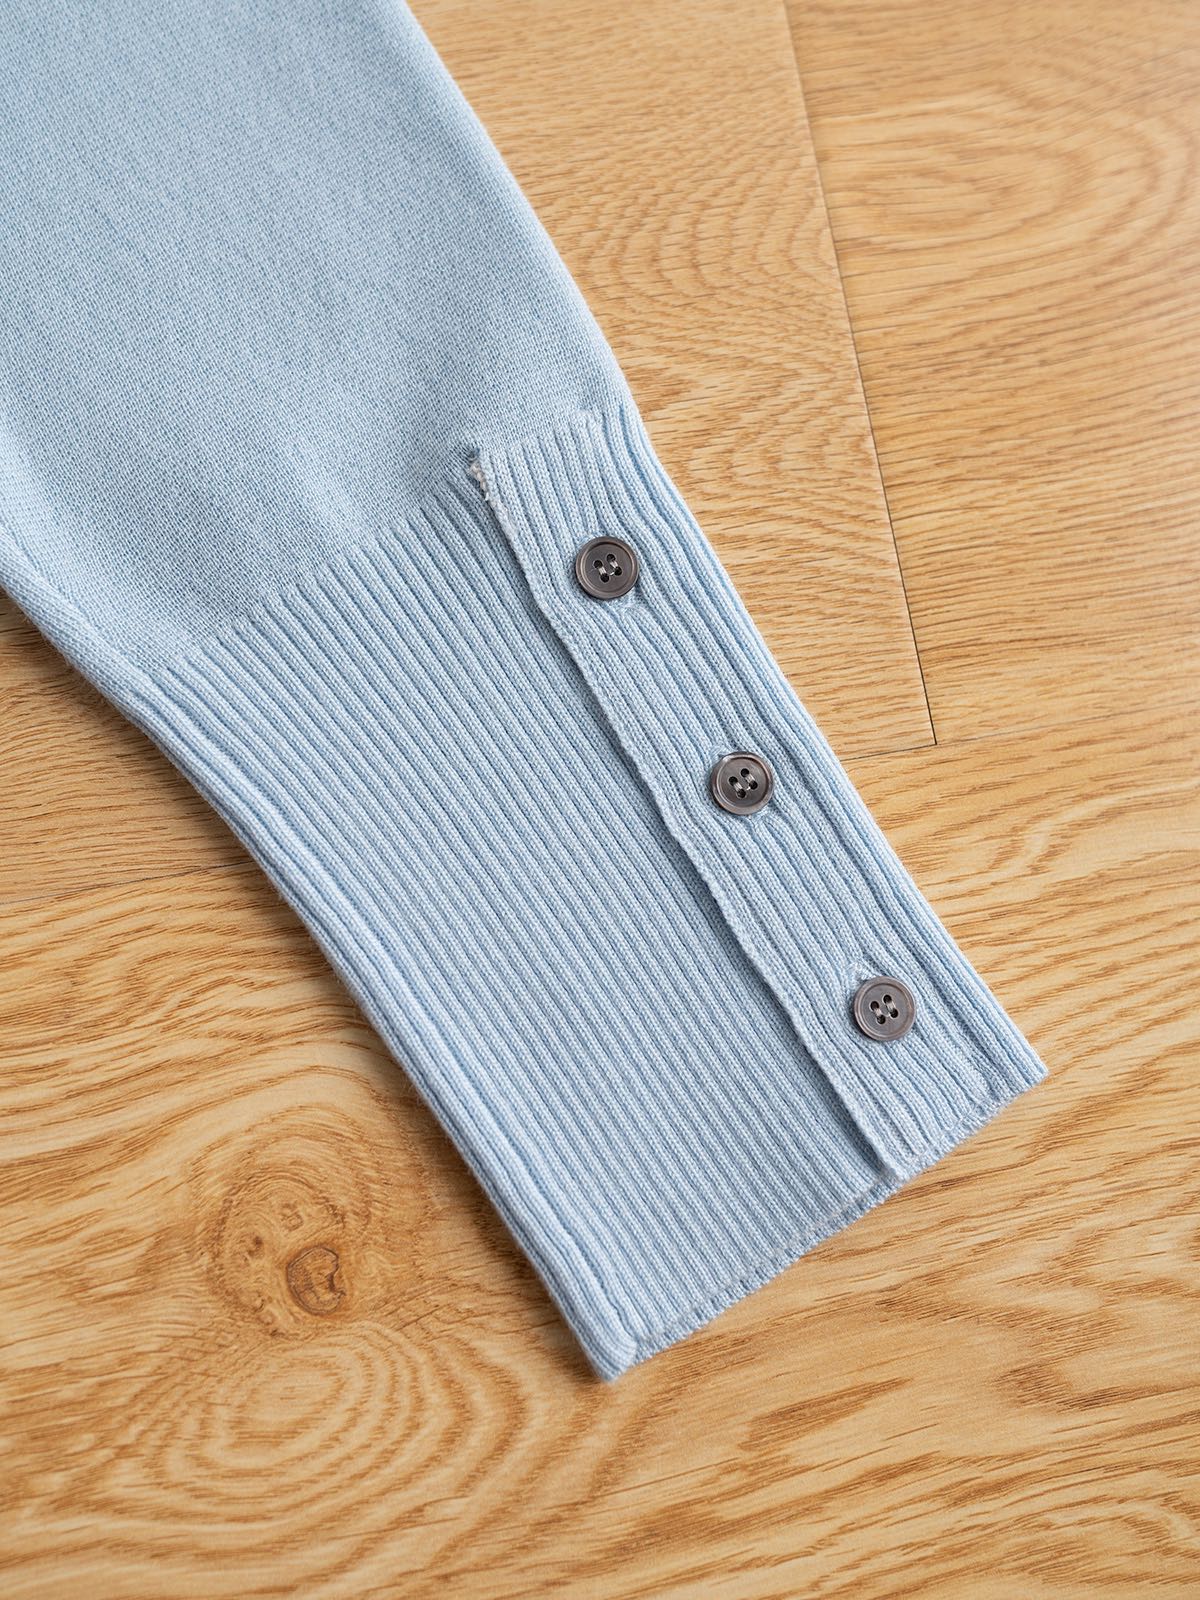 tb套装系列款16针织机全件四平加坑条织法最新公仔系列产品定纺纱线经典版型两色sml